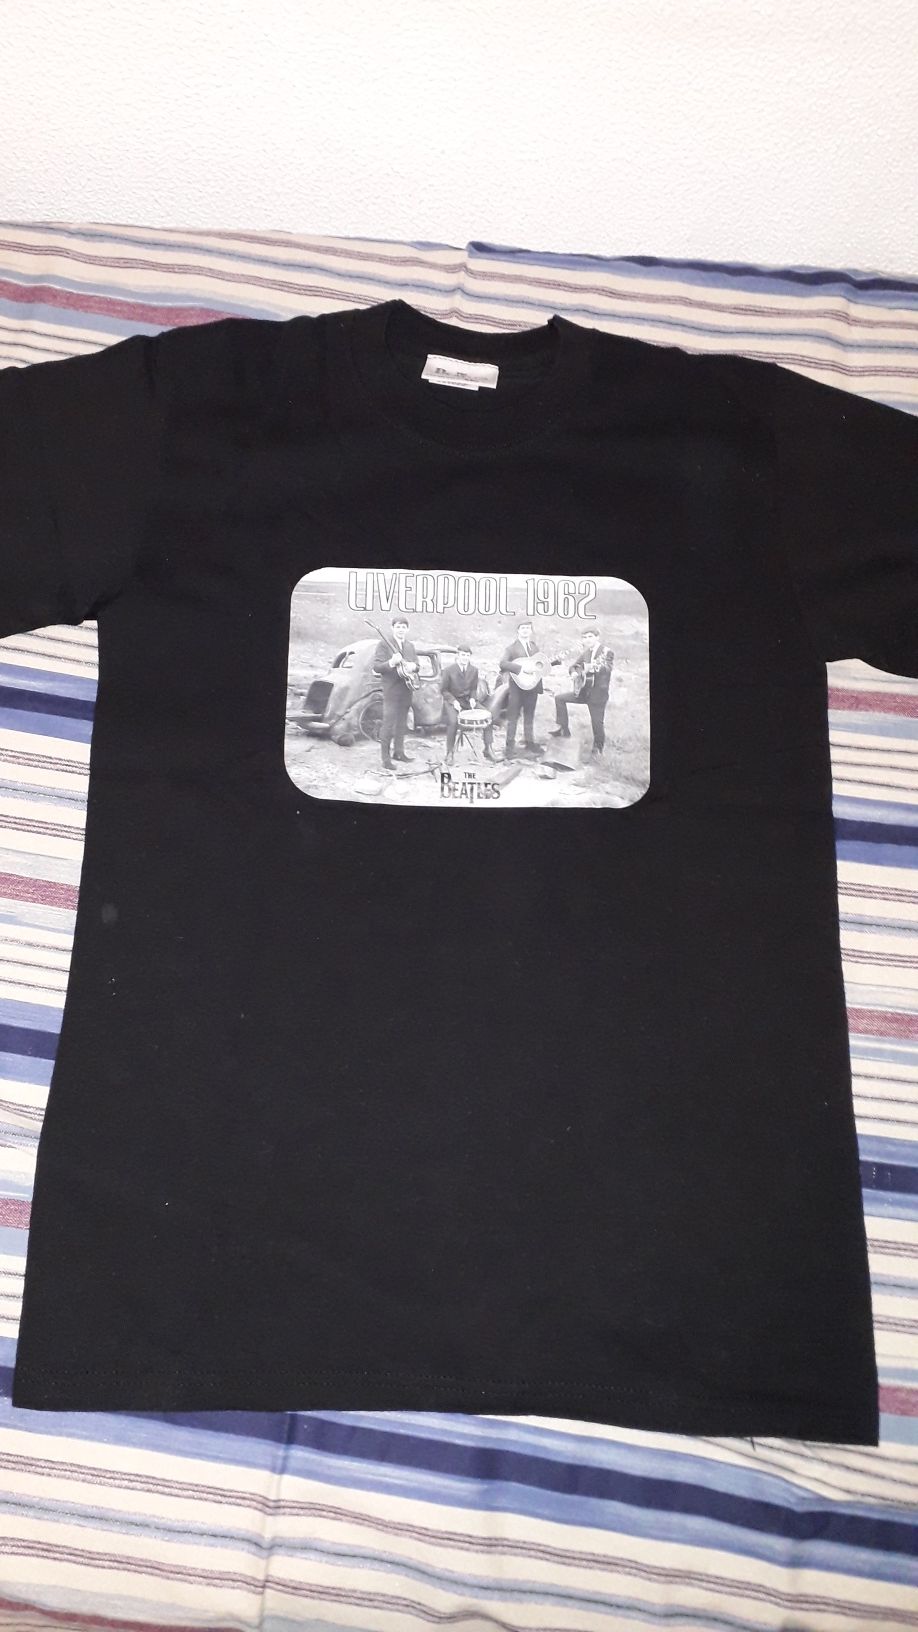 T-shirt Beatles, oficial, artigo de colecção